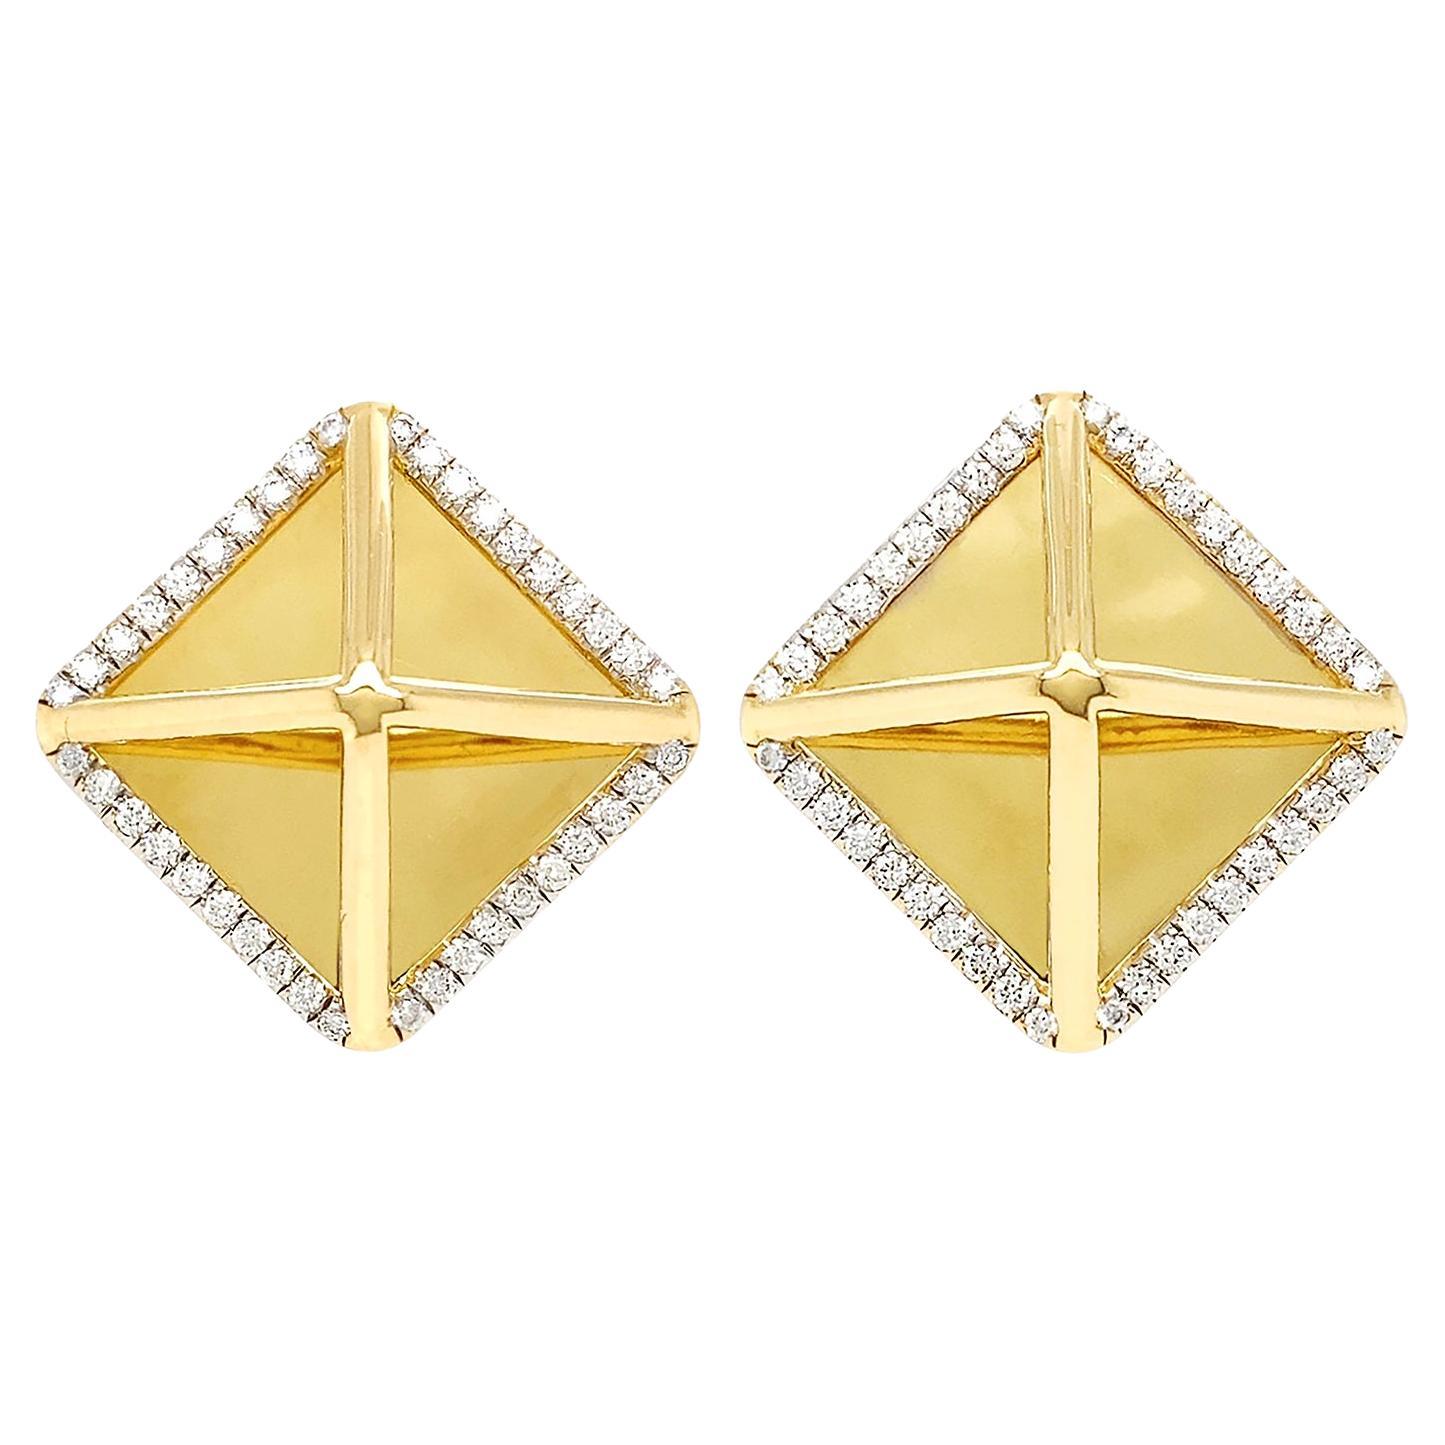 Große Pyramiden-Diamant-Ohrringe aus 18 Karat Gelbgold